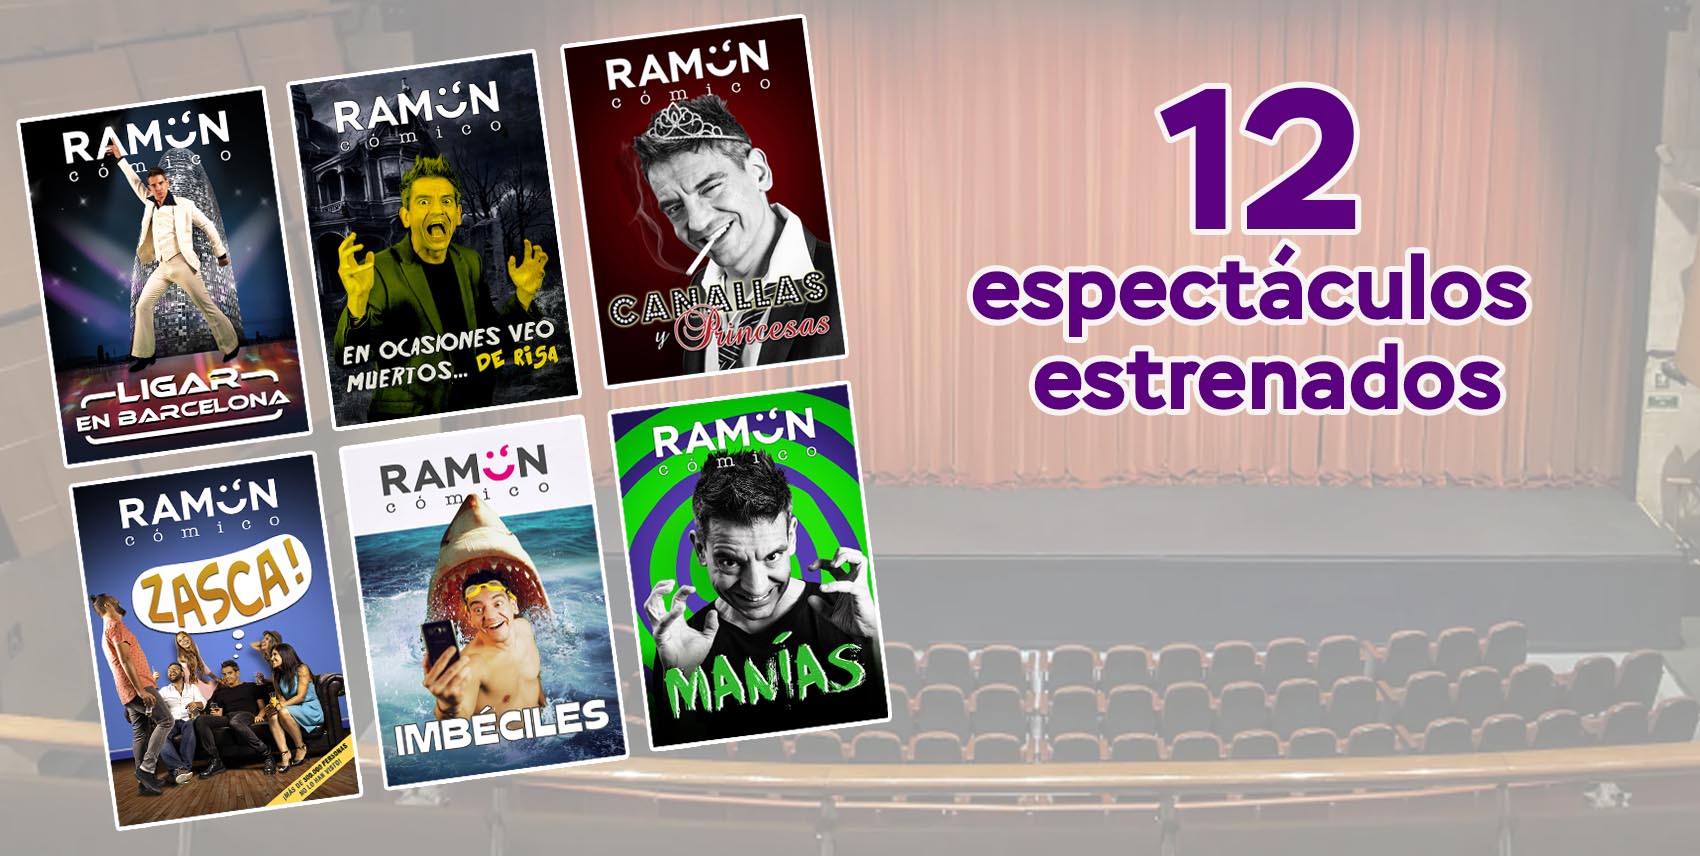 Ramón Cómico 12 espectaculos